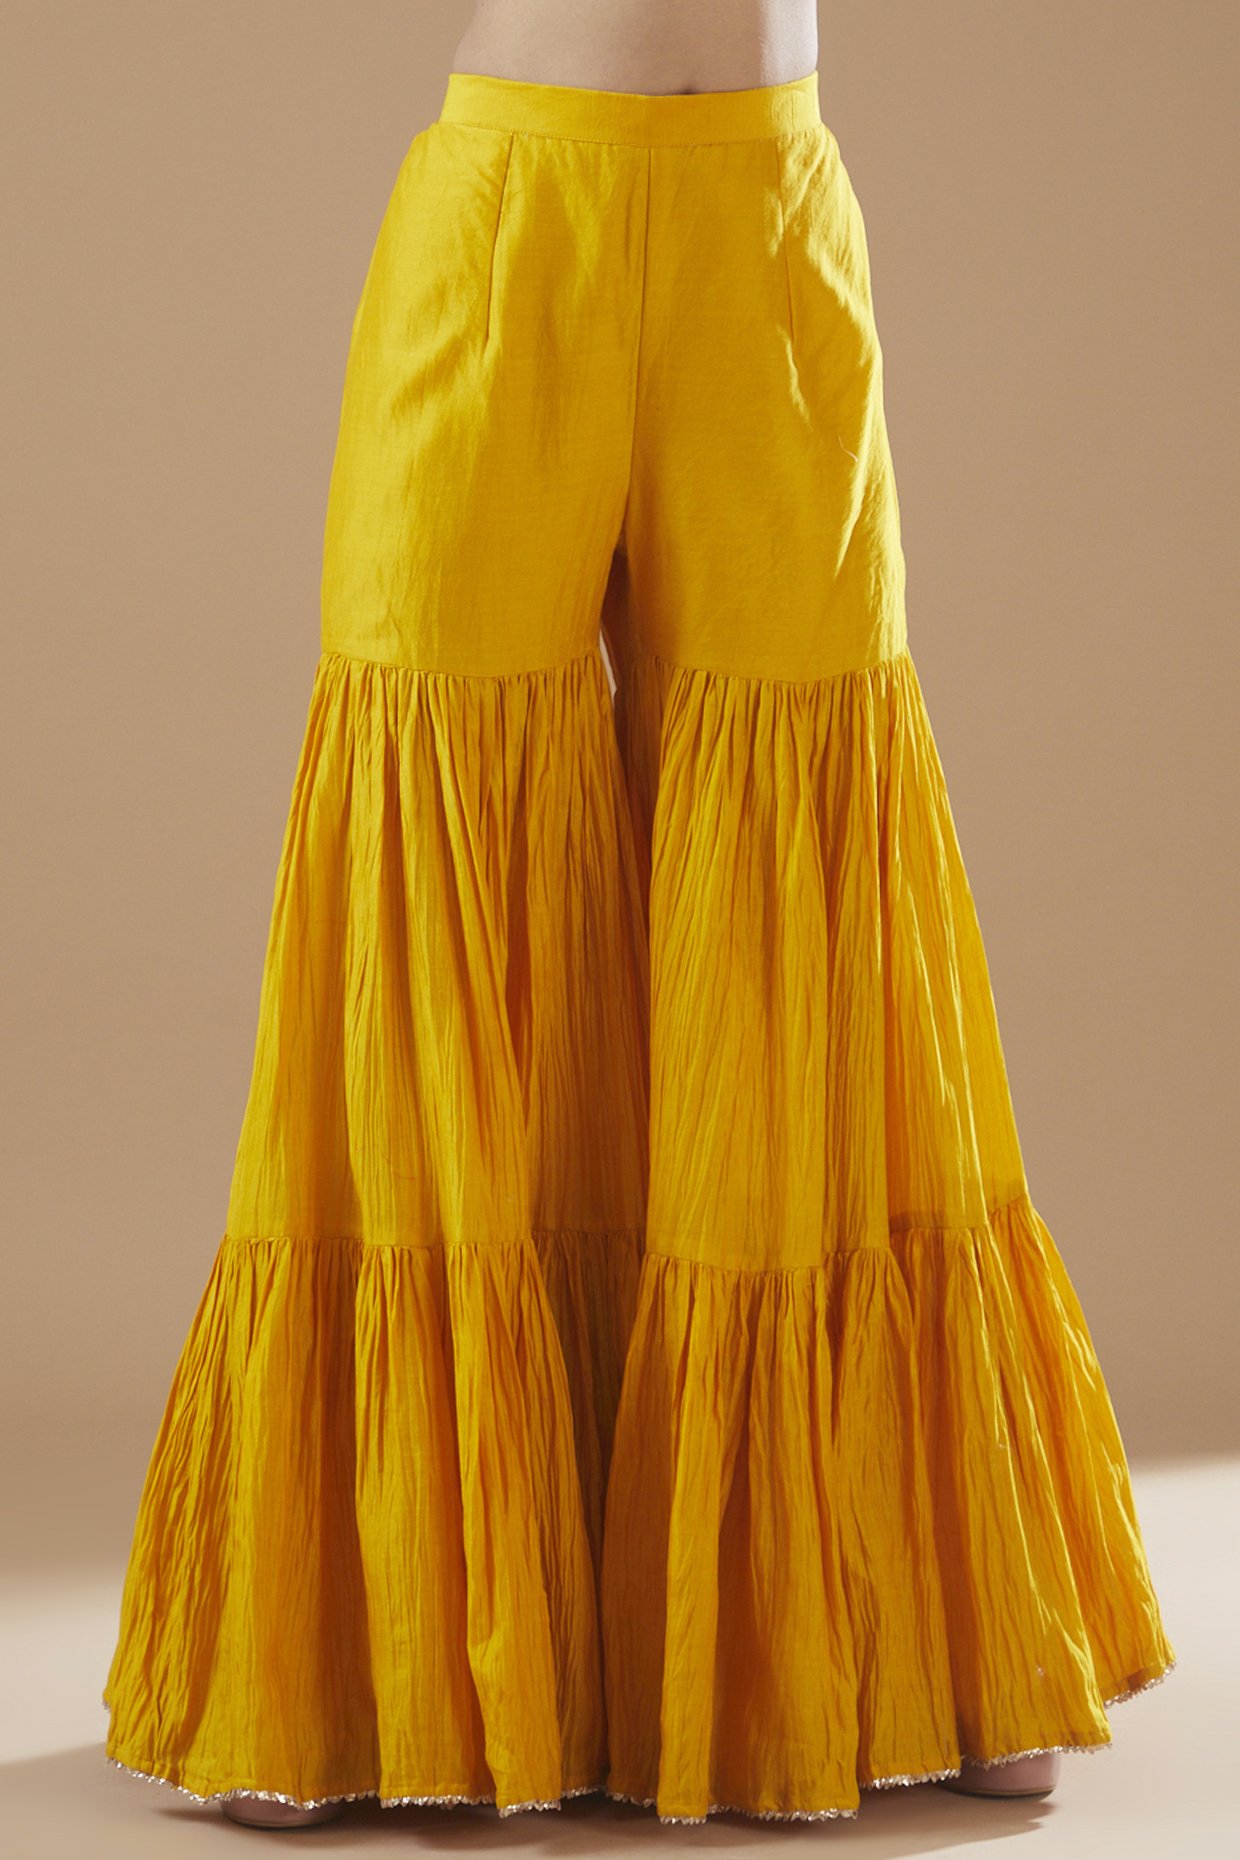 Buy Indya Women Yellow Ikat Printed Pleated Sharara Pants Sharara Pant,  Yellow, S at Amazon.in